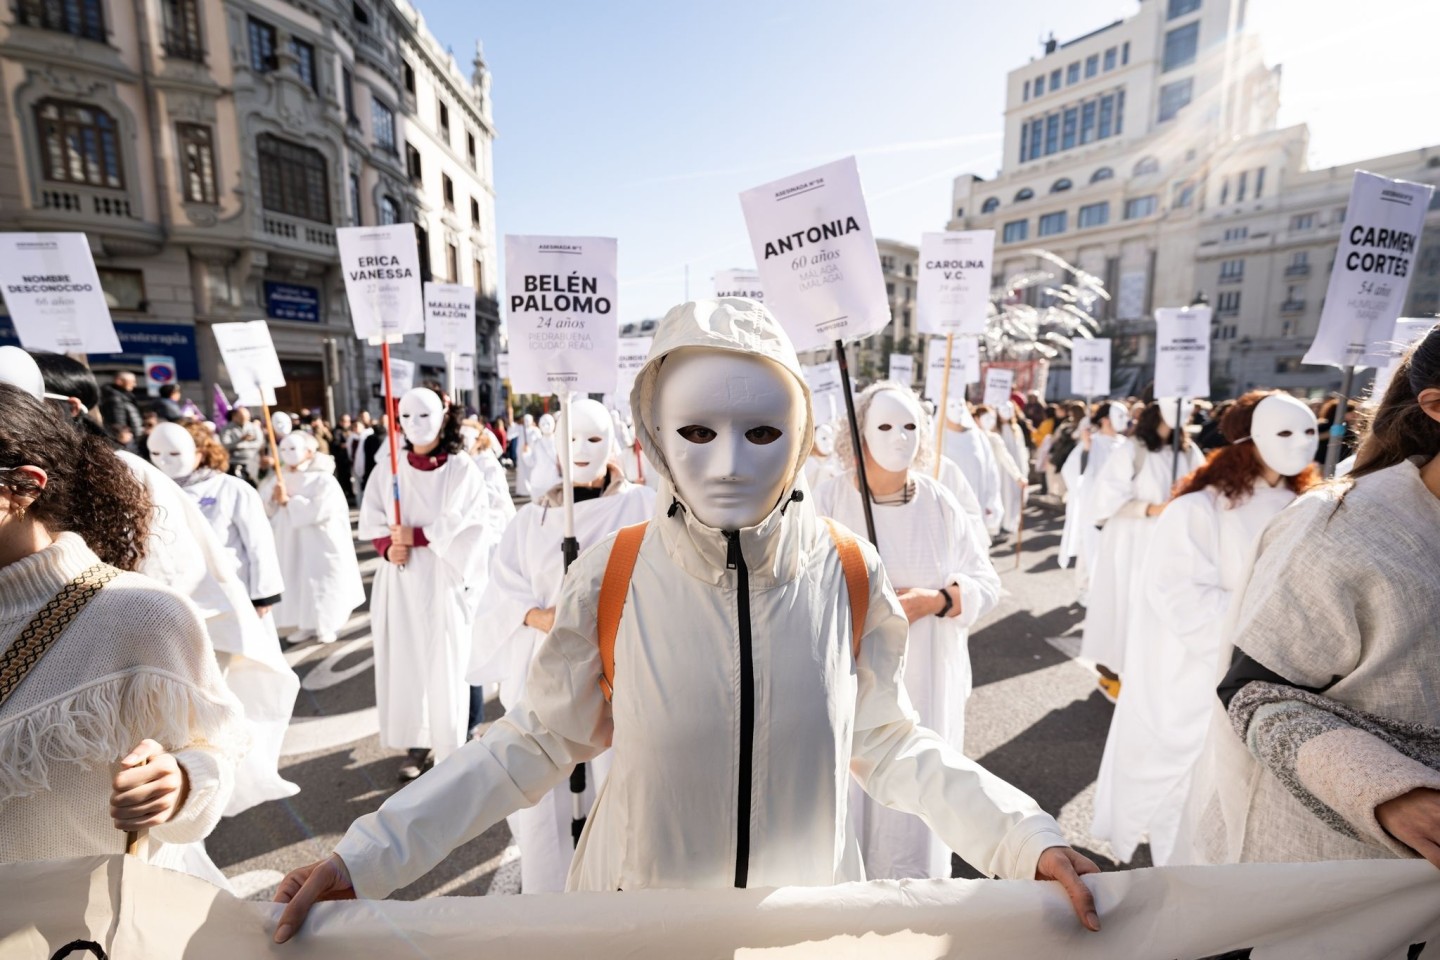 Demonstranten in Madrid tragen Schilder mit den Namen von Frauen, die durch männliche Gewalt ermordet wurden.